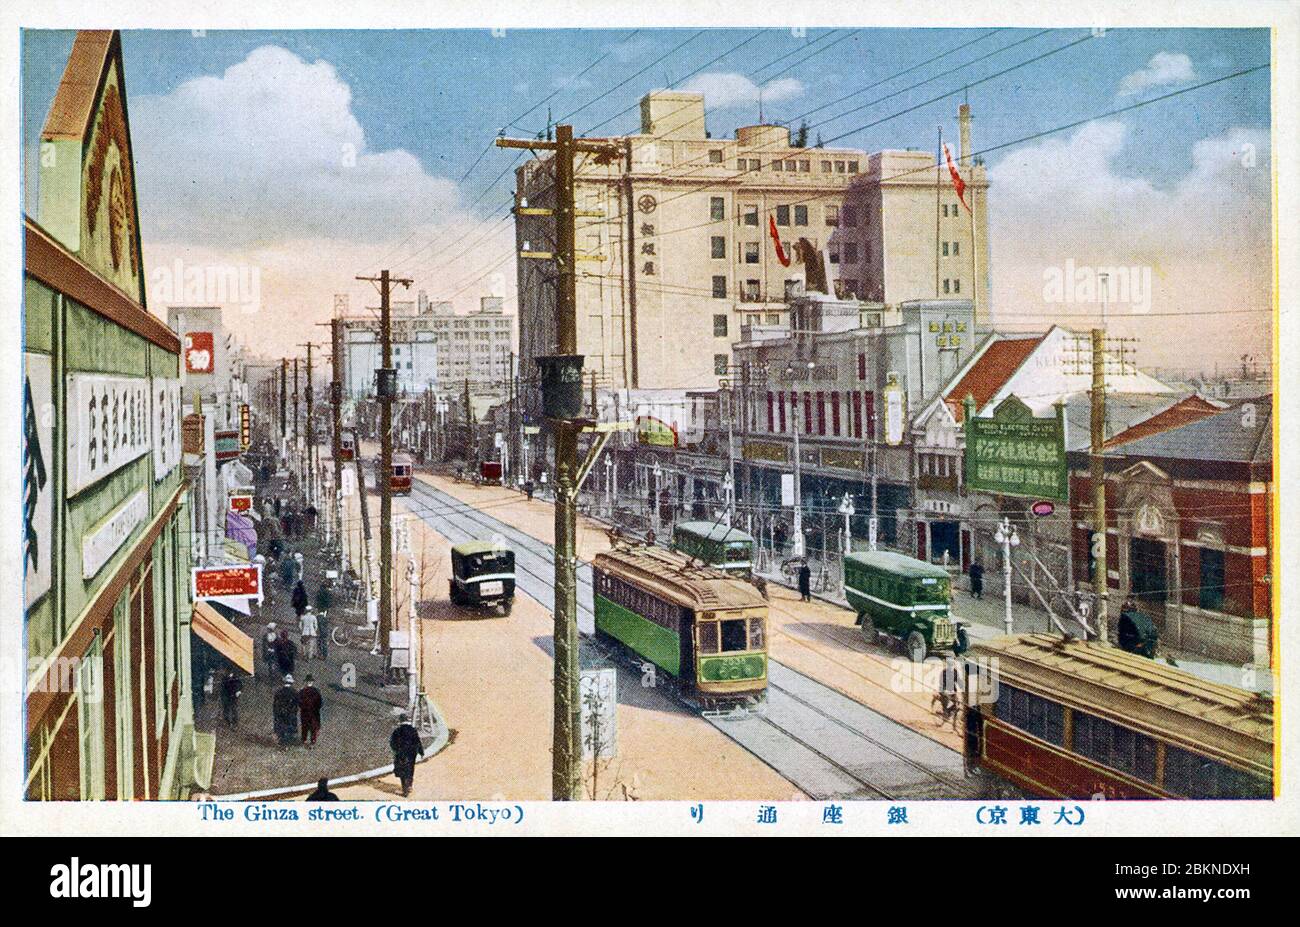 [ 1920er Jahre Japan - Ginza, Tokyo ] - Elektrifizierte Straßenbahnen, Busse und ein Taxi auf Ginza, Tokyo. Vintage-Postkarte des 20. Jahrhunderts. Stockfoto